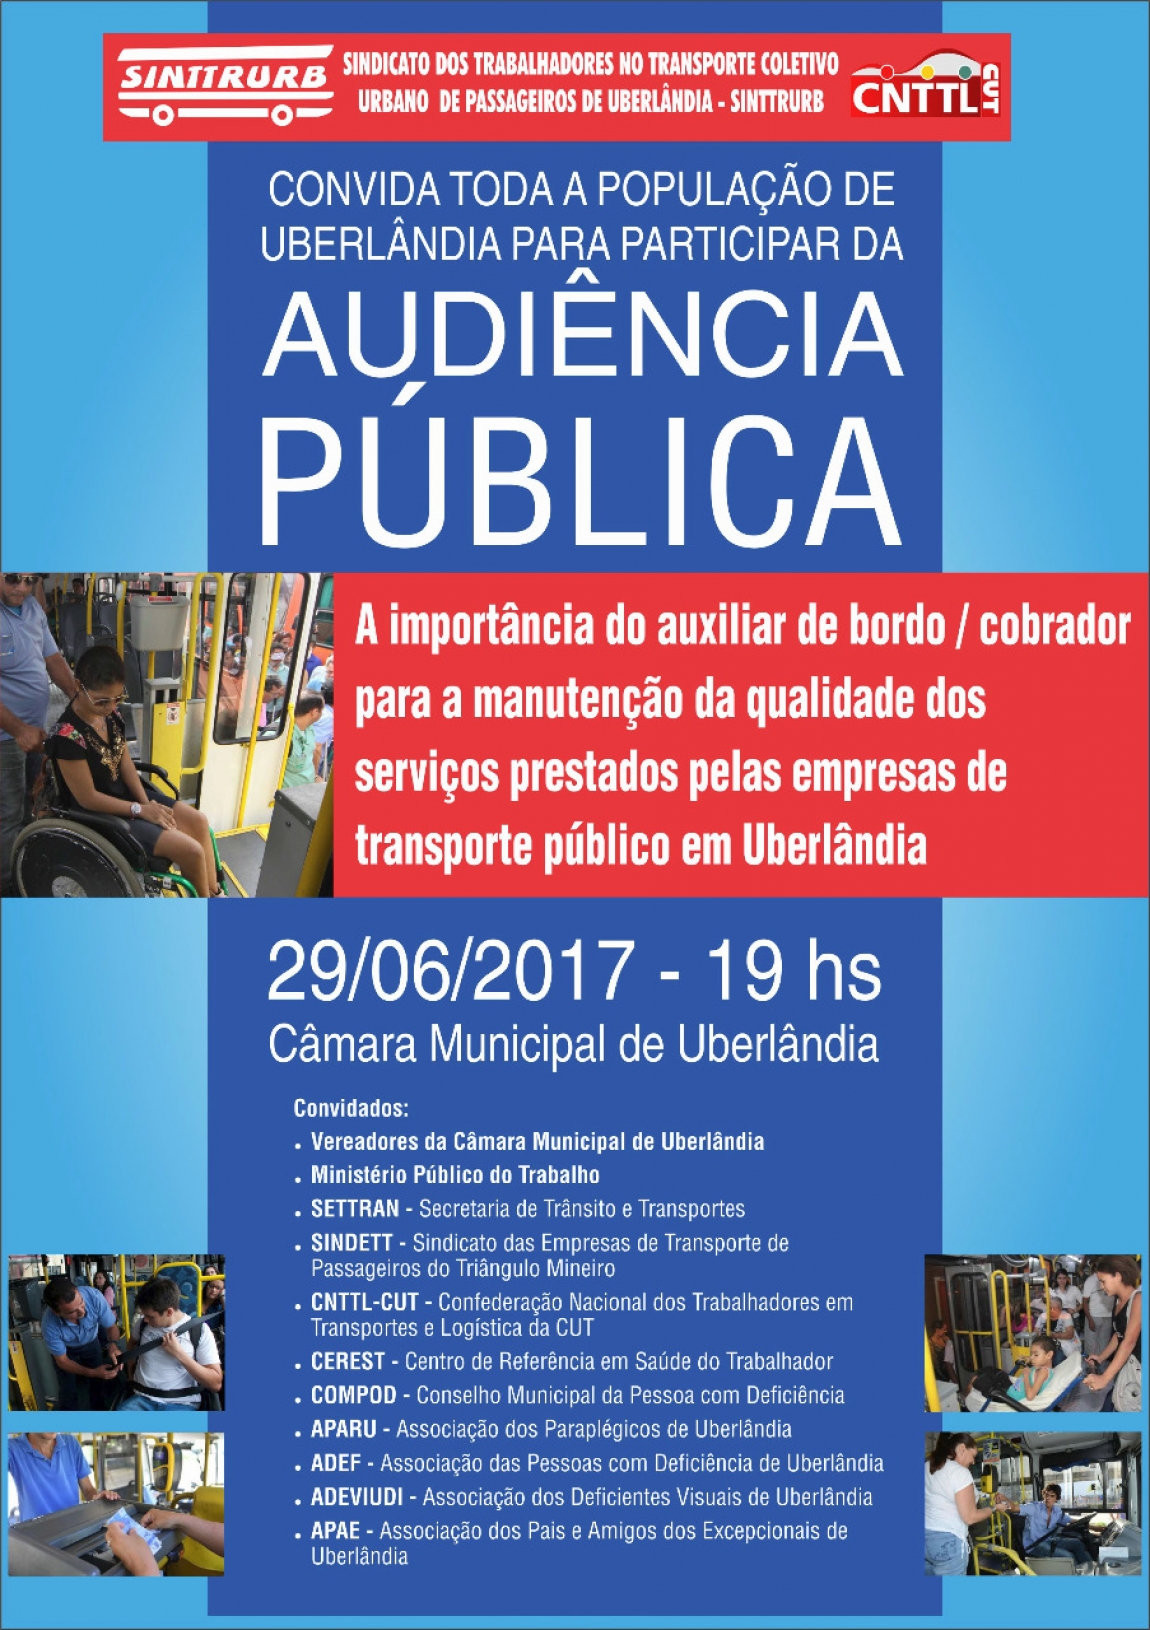 Imagem de Uberlândia (MG): Sinttrurb promoverá audiência pública em defesa da profissão do posto do cobrador/agente de bordo 